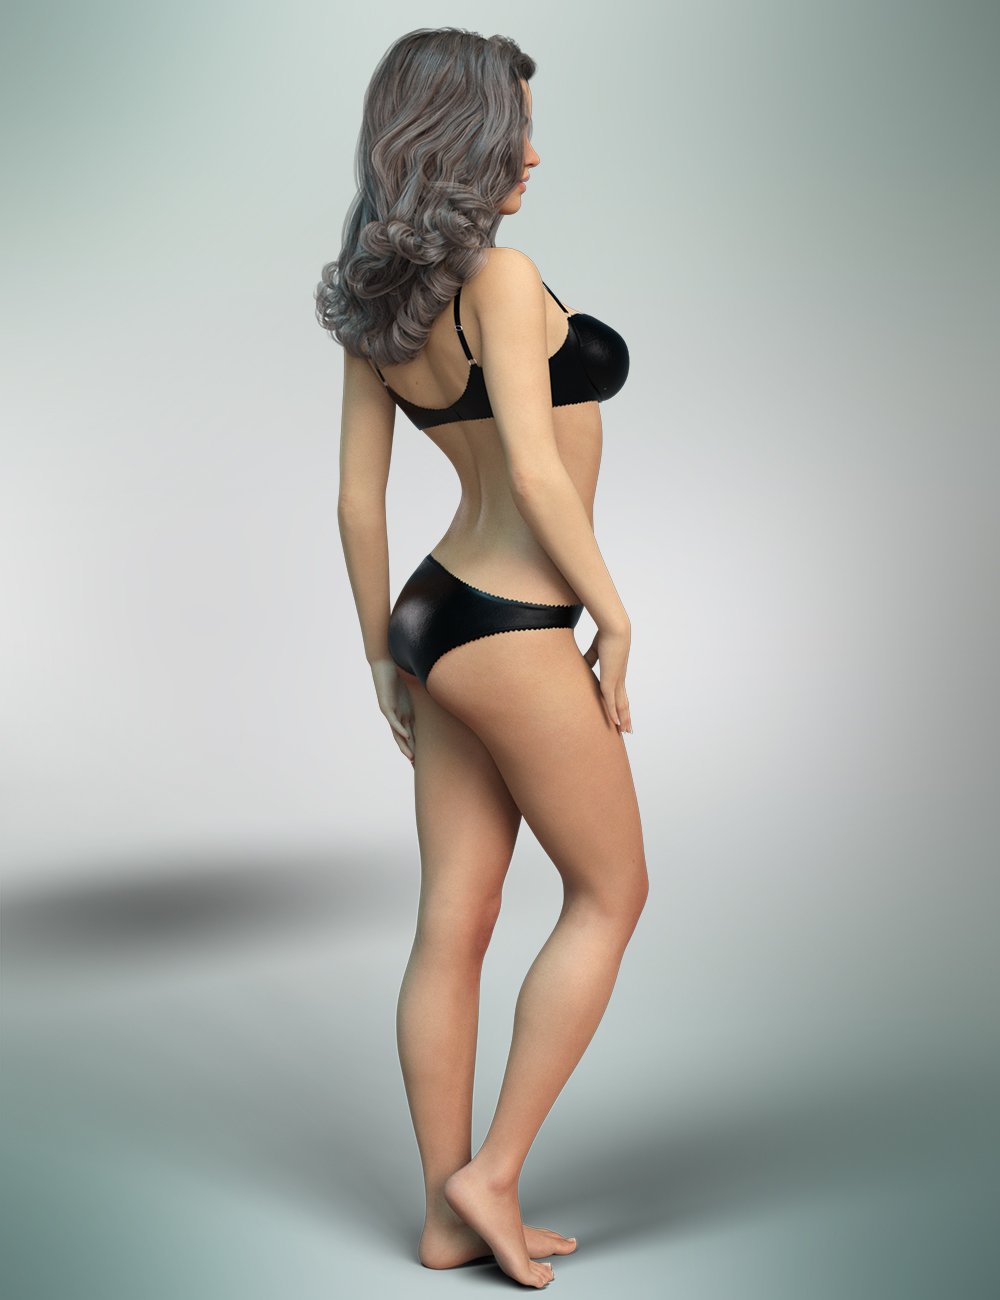 FWSA Jaelyn HD for Genesis 8 Female by: Fred Winkler ArtSabby, 3D Models by Daz 3D